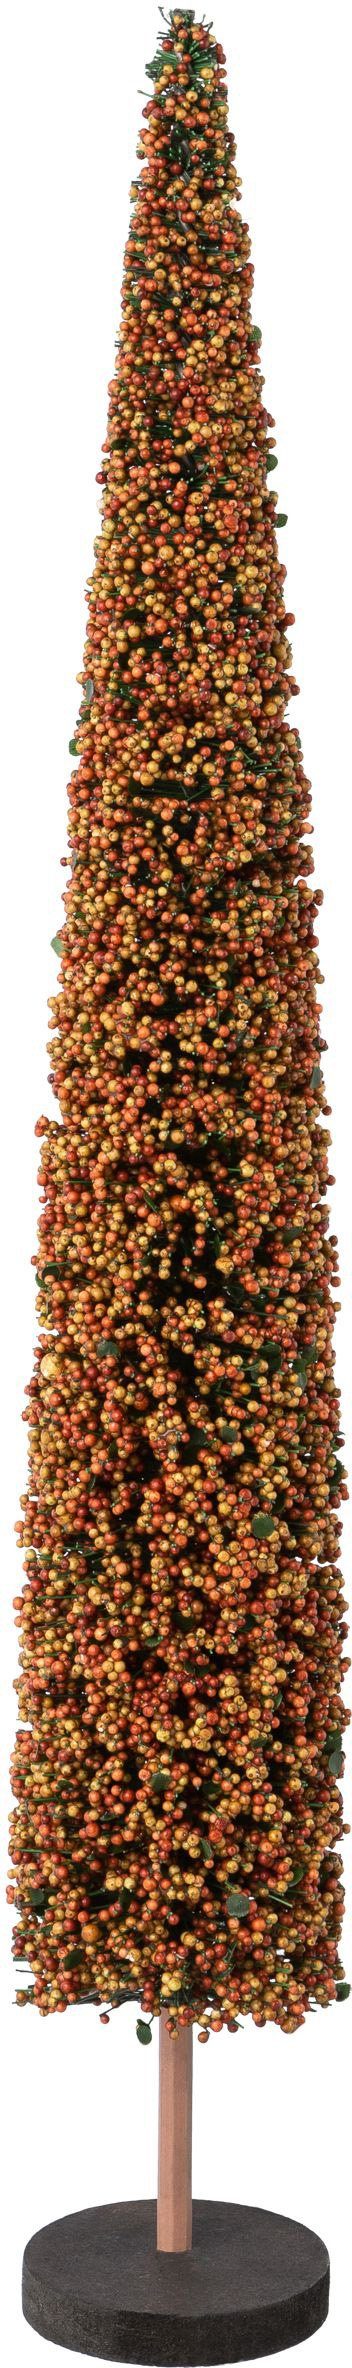 Creativ deco Dekobaum Weihnachtsdeko (1 St), auf hochwertiger Holzbase, mit Perlen verziert, Höhe 60 cm natur